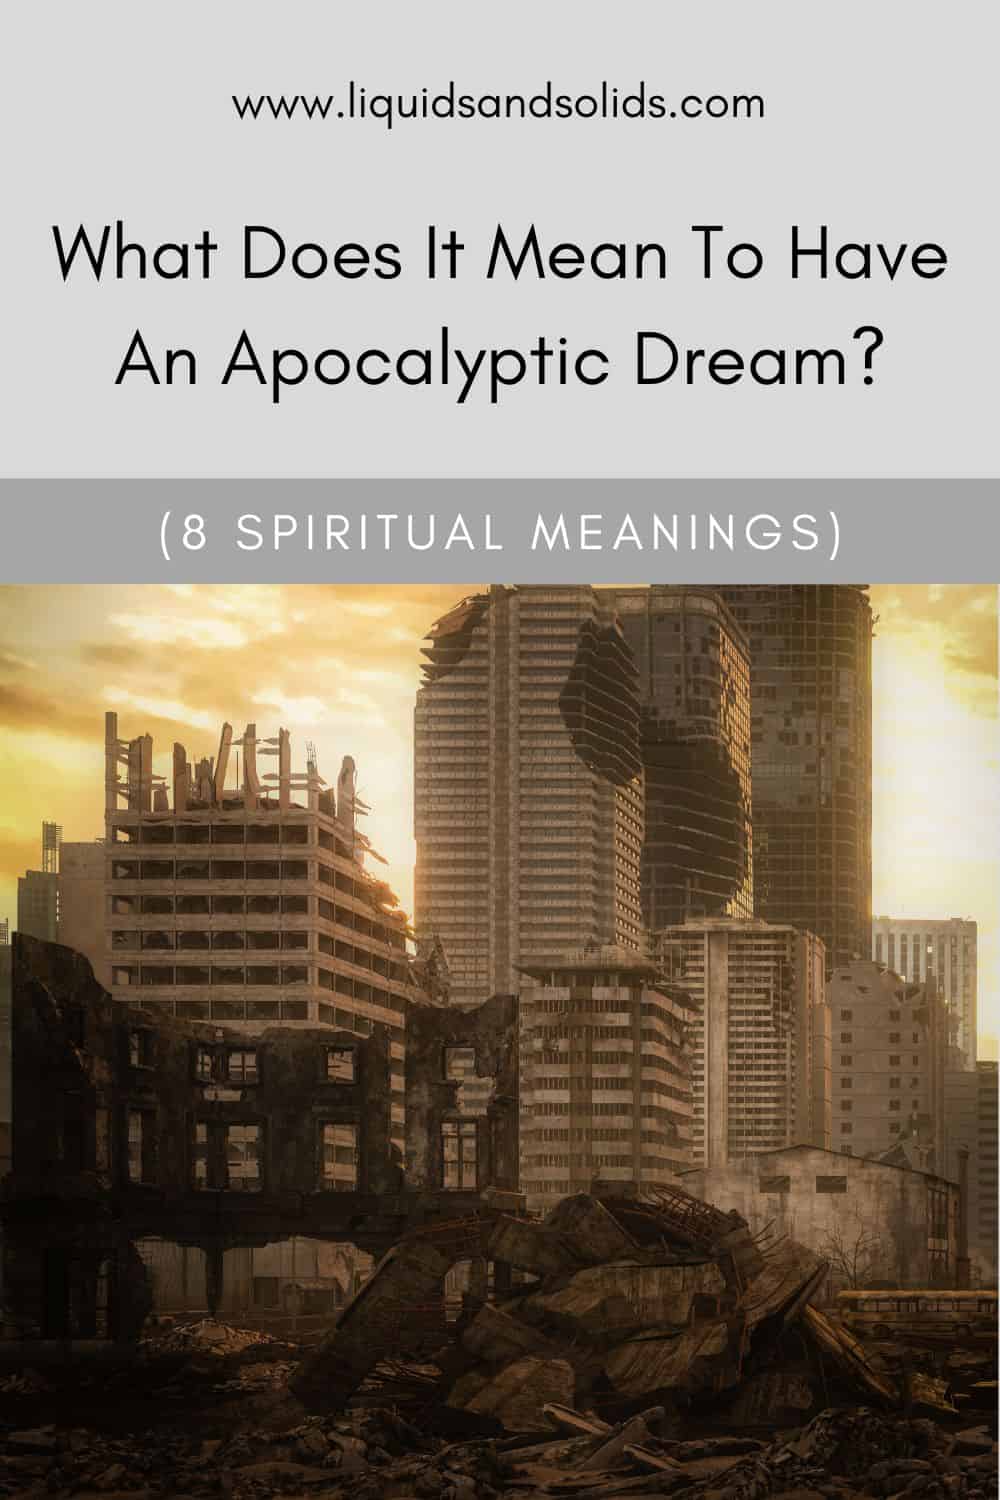  Mit jelent egy apokaliptikus álom? (8 spirituális jelentés)